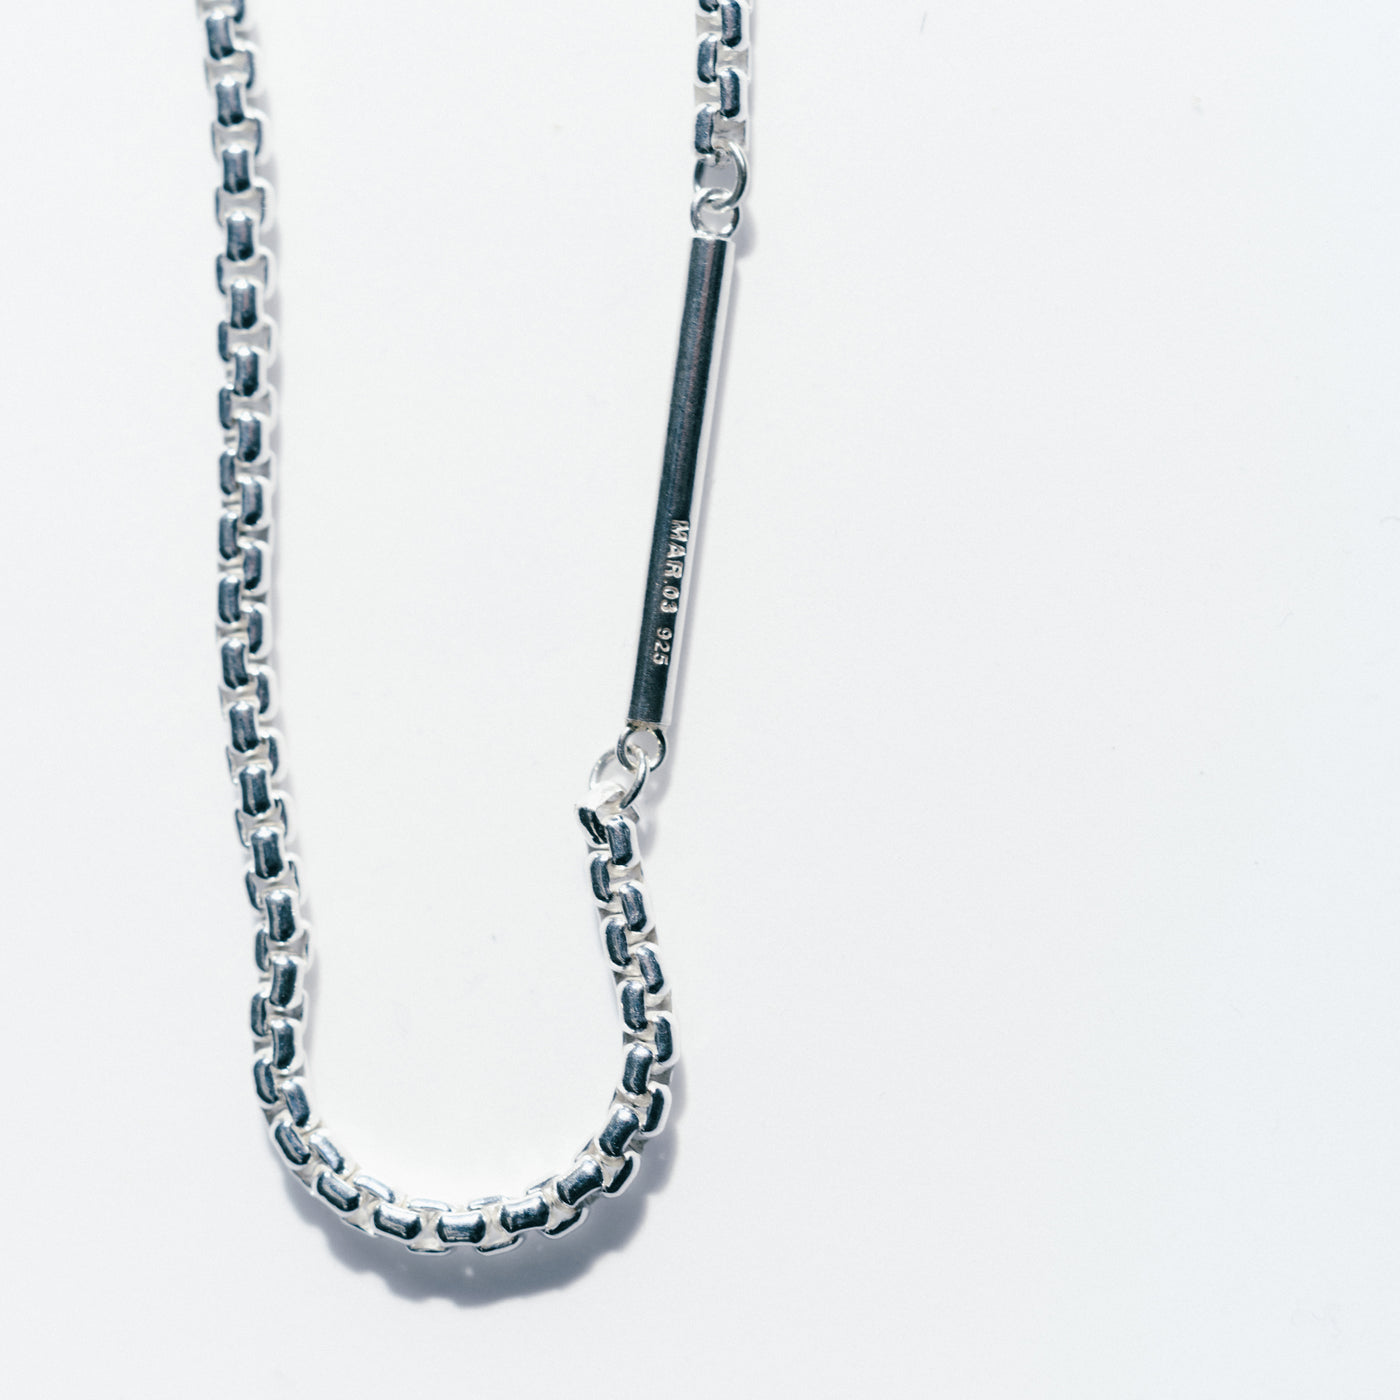 【メーカー直送】MAR.03 Venetian Chain Bracelet